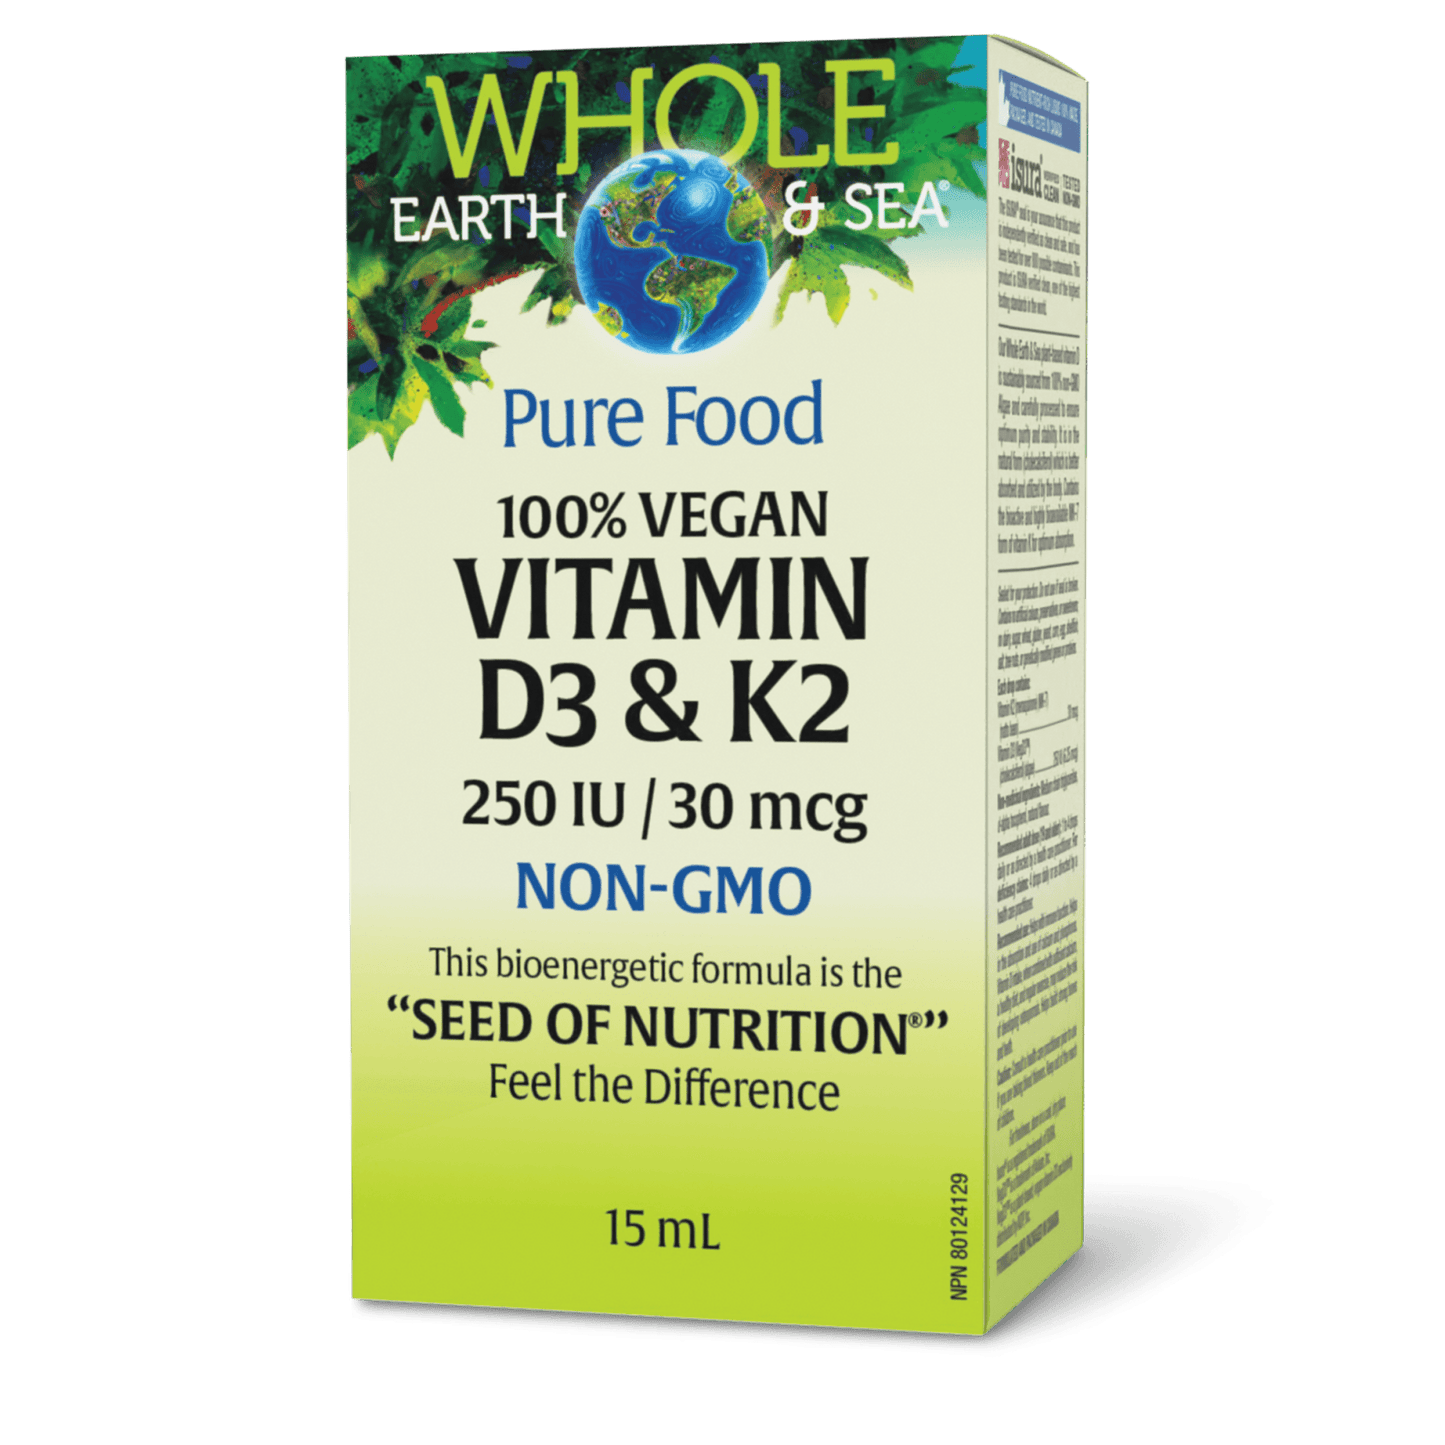 100% Vegan Vitamin D3 & K2, Whole Earth & Sea, Whole Earth & Sea®|v|image|35747